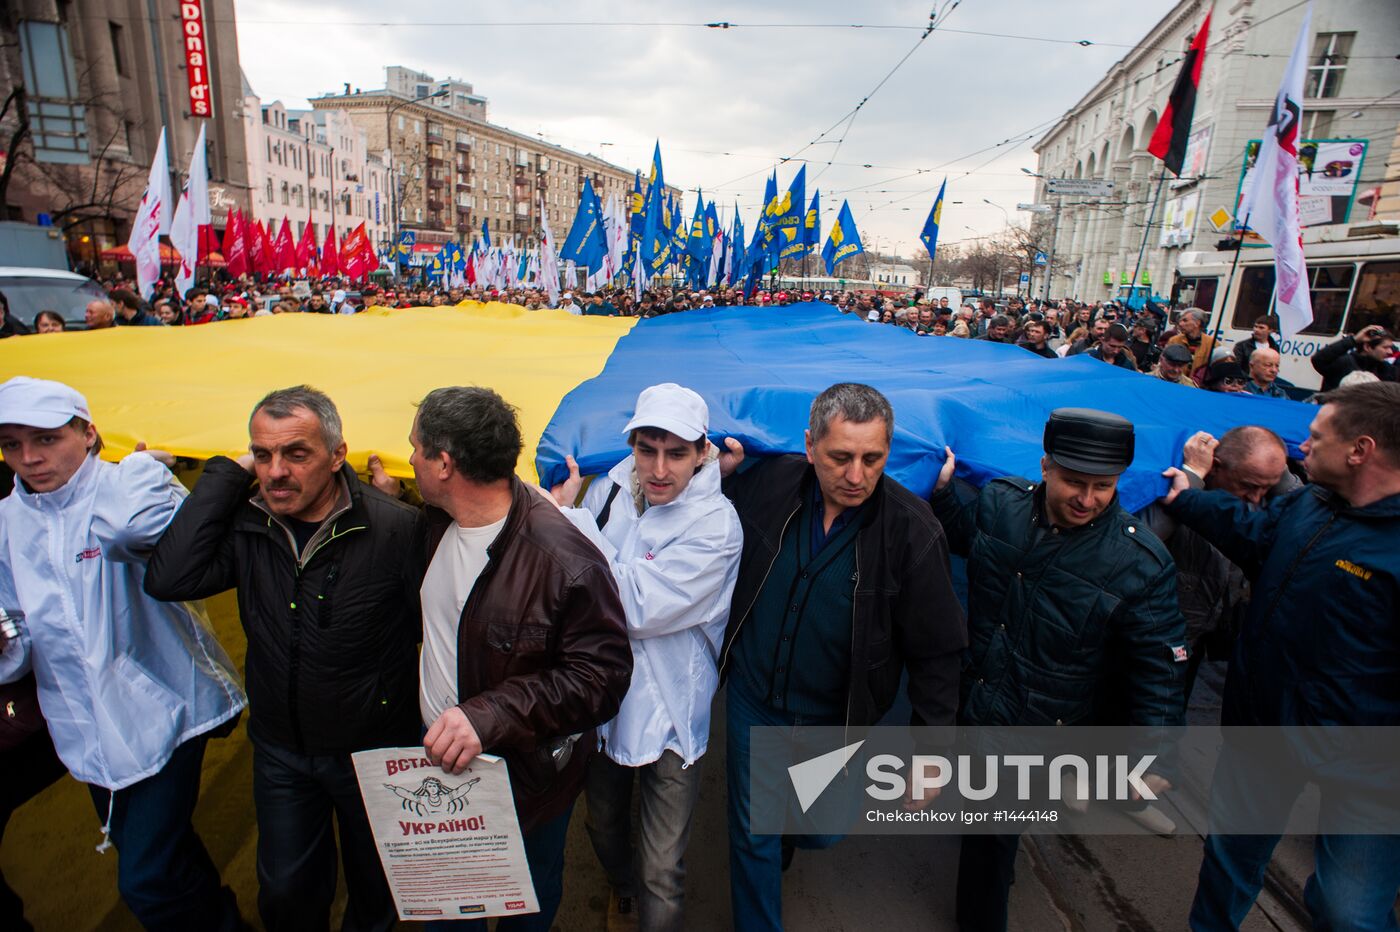 Opposition rally in Kharkiv